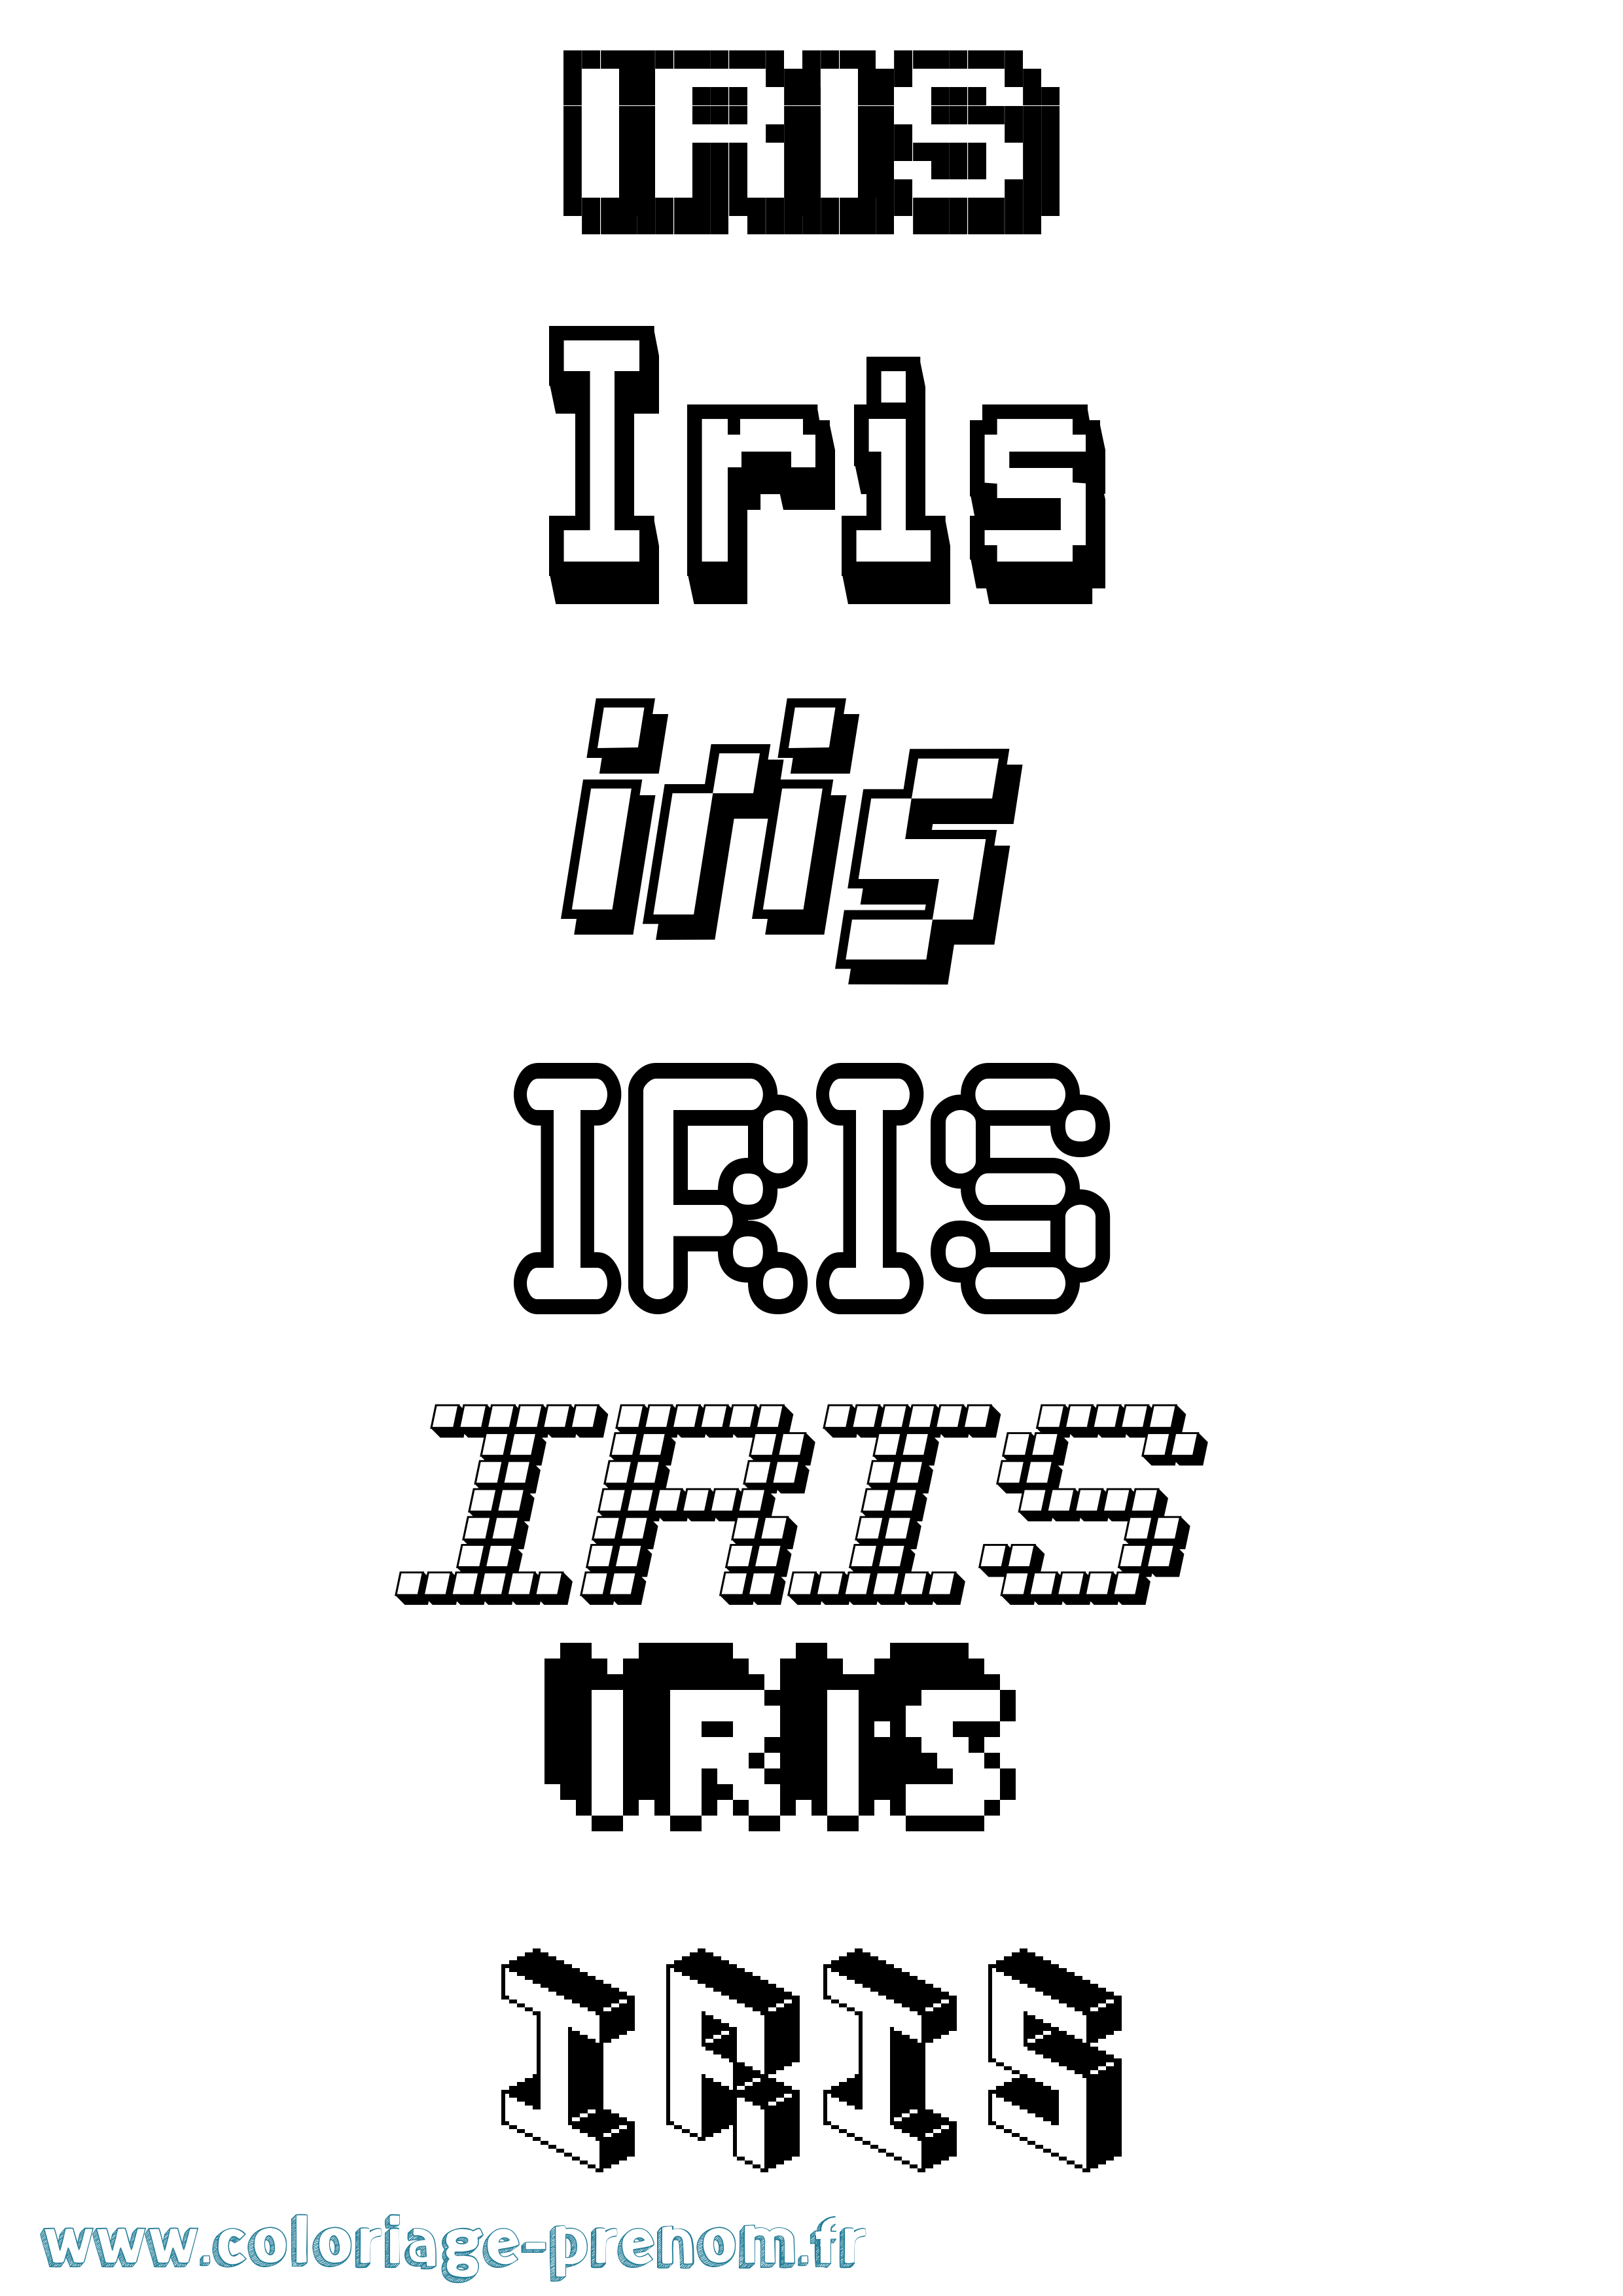 Coloriage prénom Iris Pixel